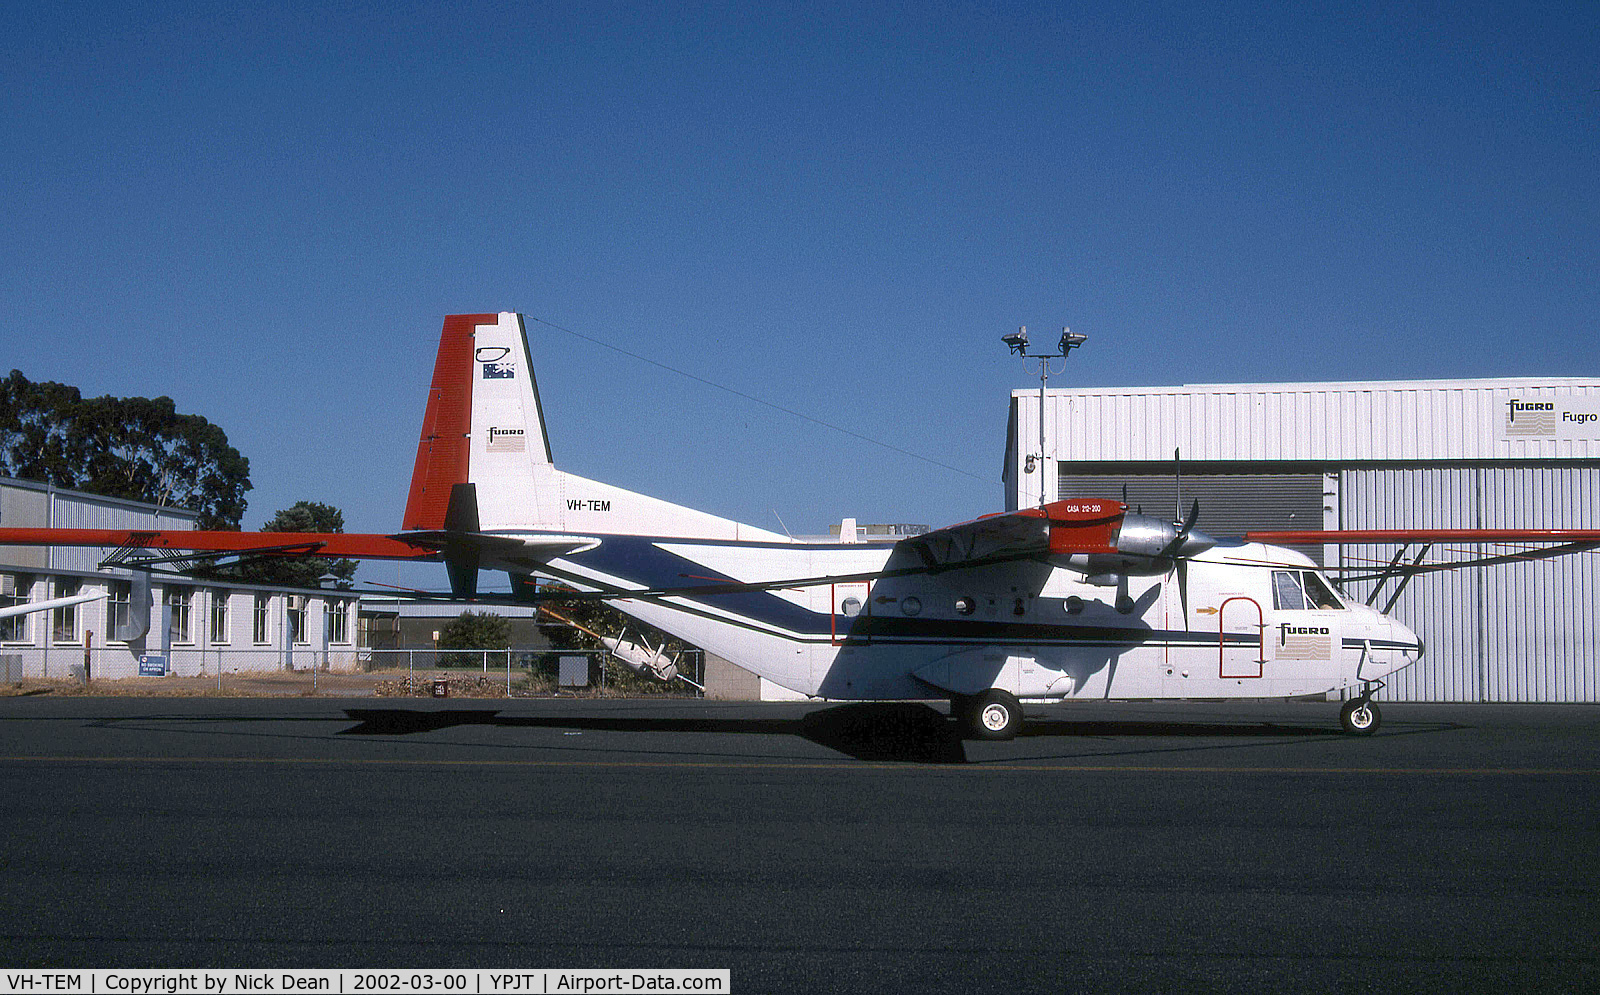 VH-TEM, 1978 CASA C-212-200 Aviocar C/N 138, /